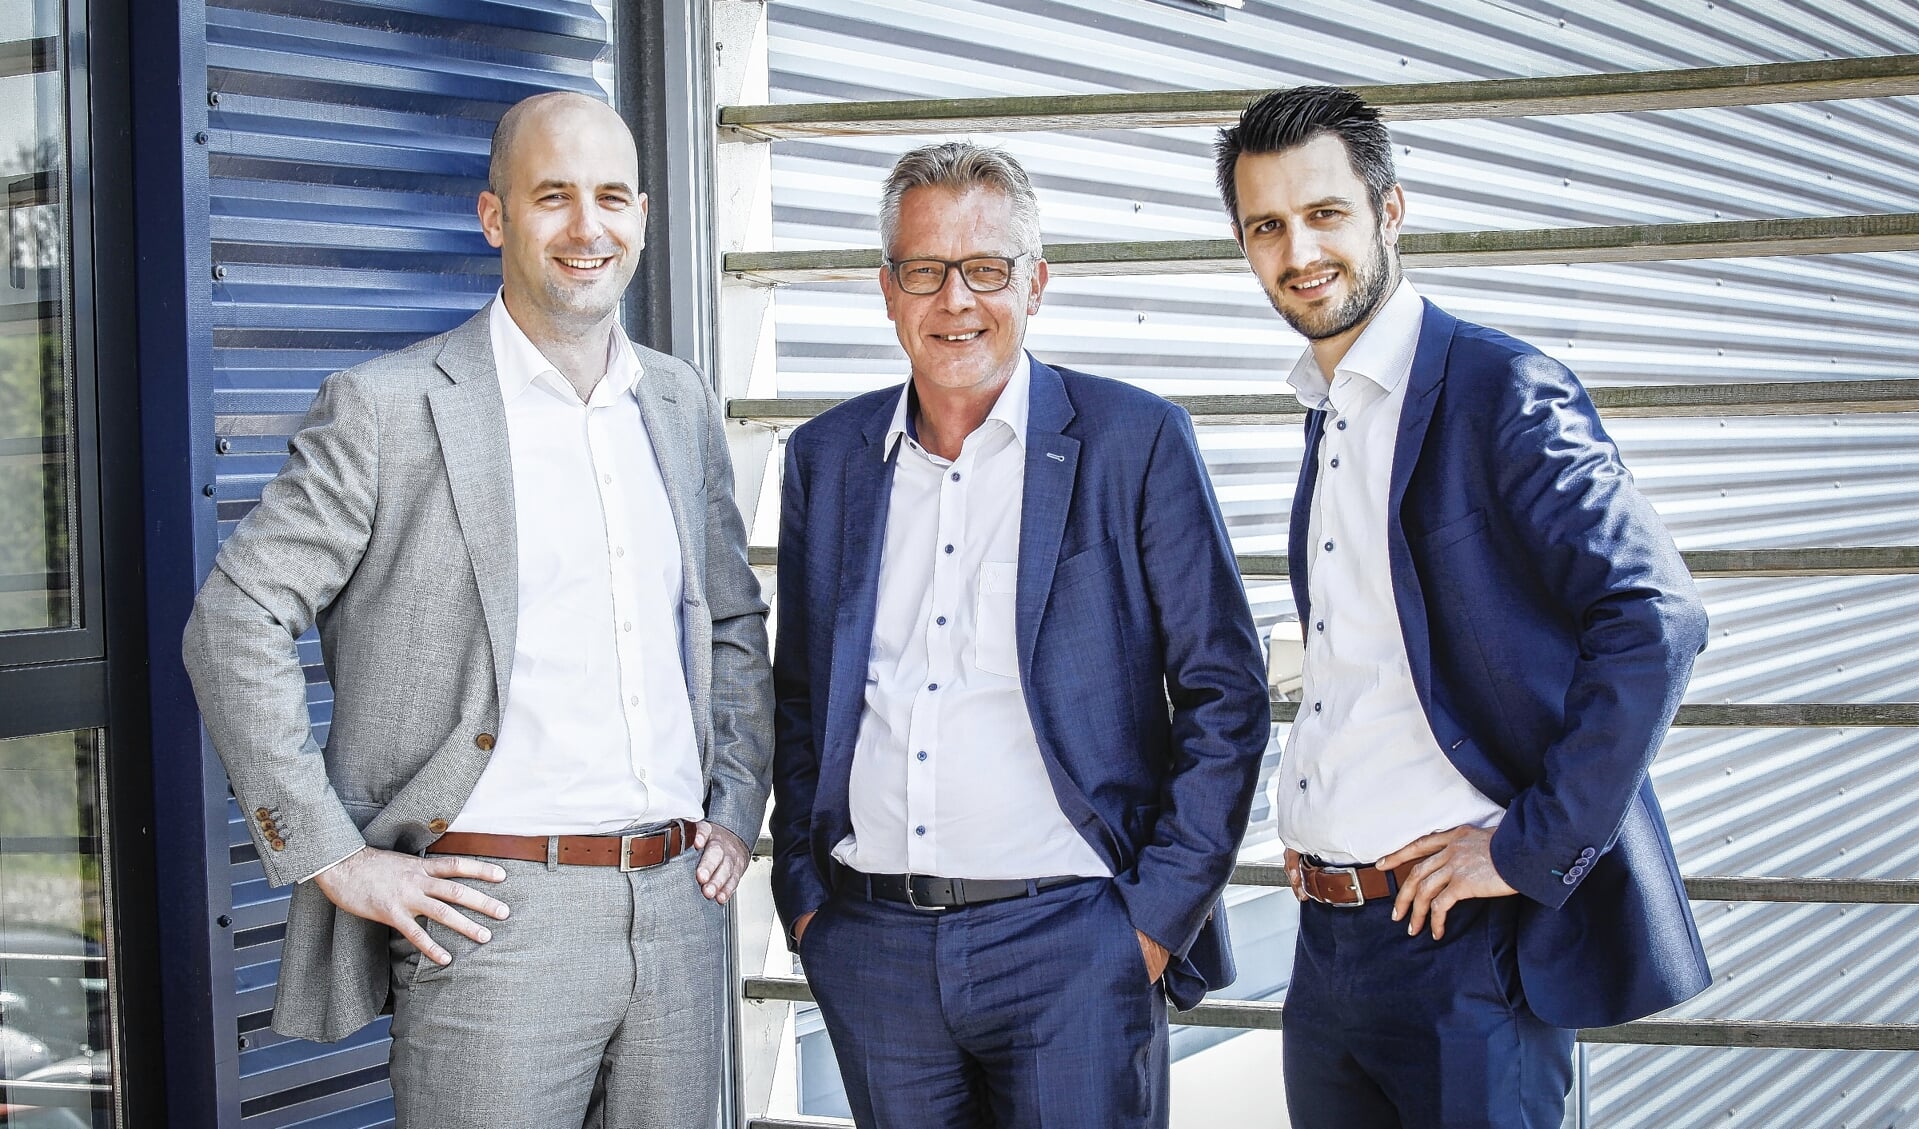 De directie van SkyLift werd eerder dit jaar uitgebreid. Op de foto van links naar rechts adjunct-directeur Thijs Jansen, algemeen directeur Hilke Hoekstra en Pieter Jan Kraaima, die verantwoordelijk is voor operationele zaken.